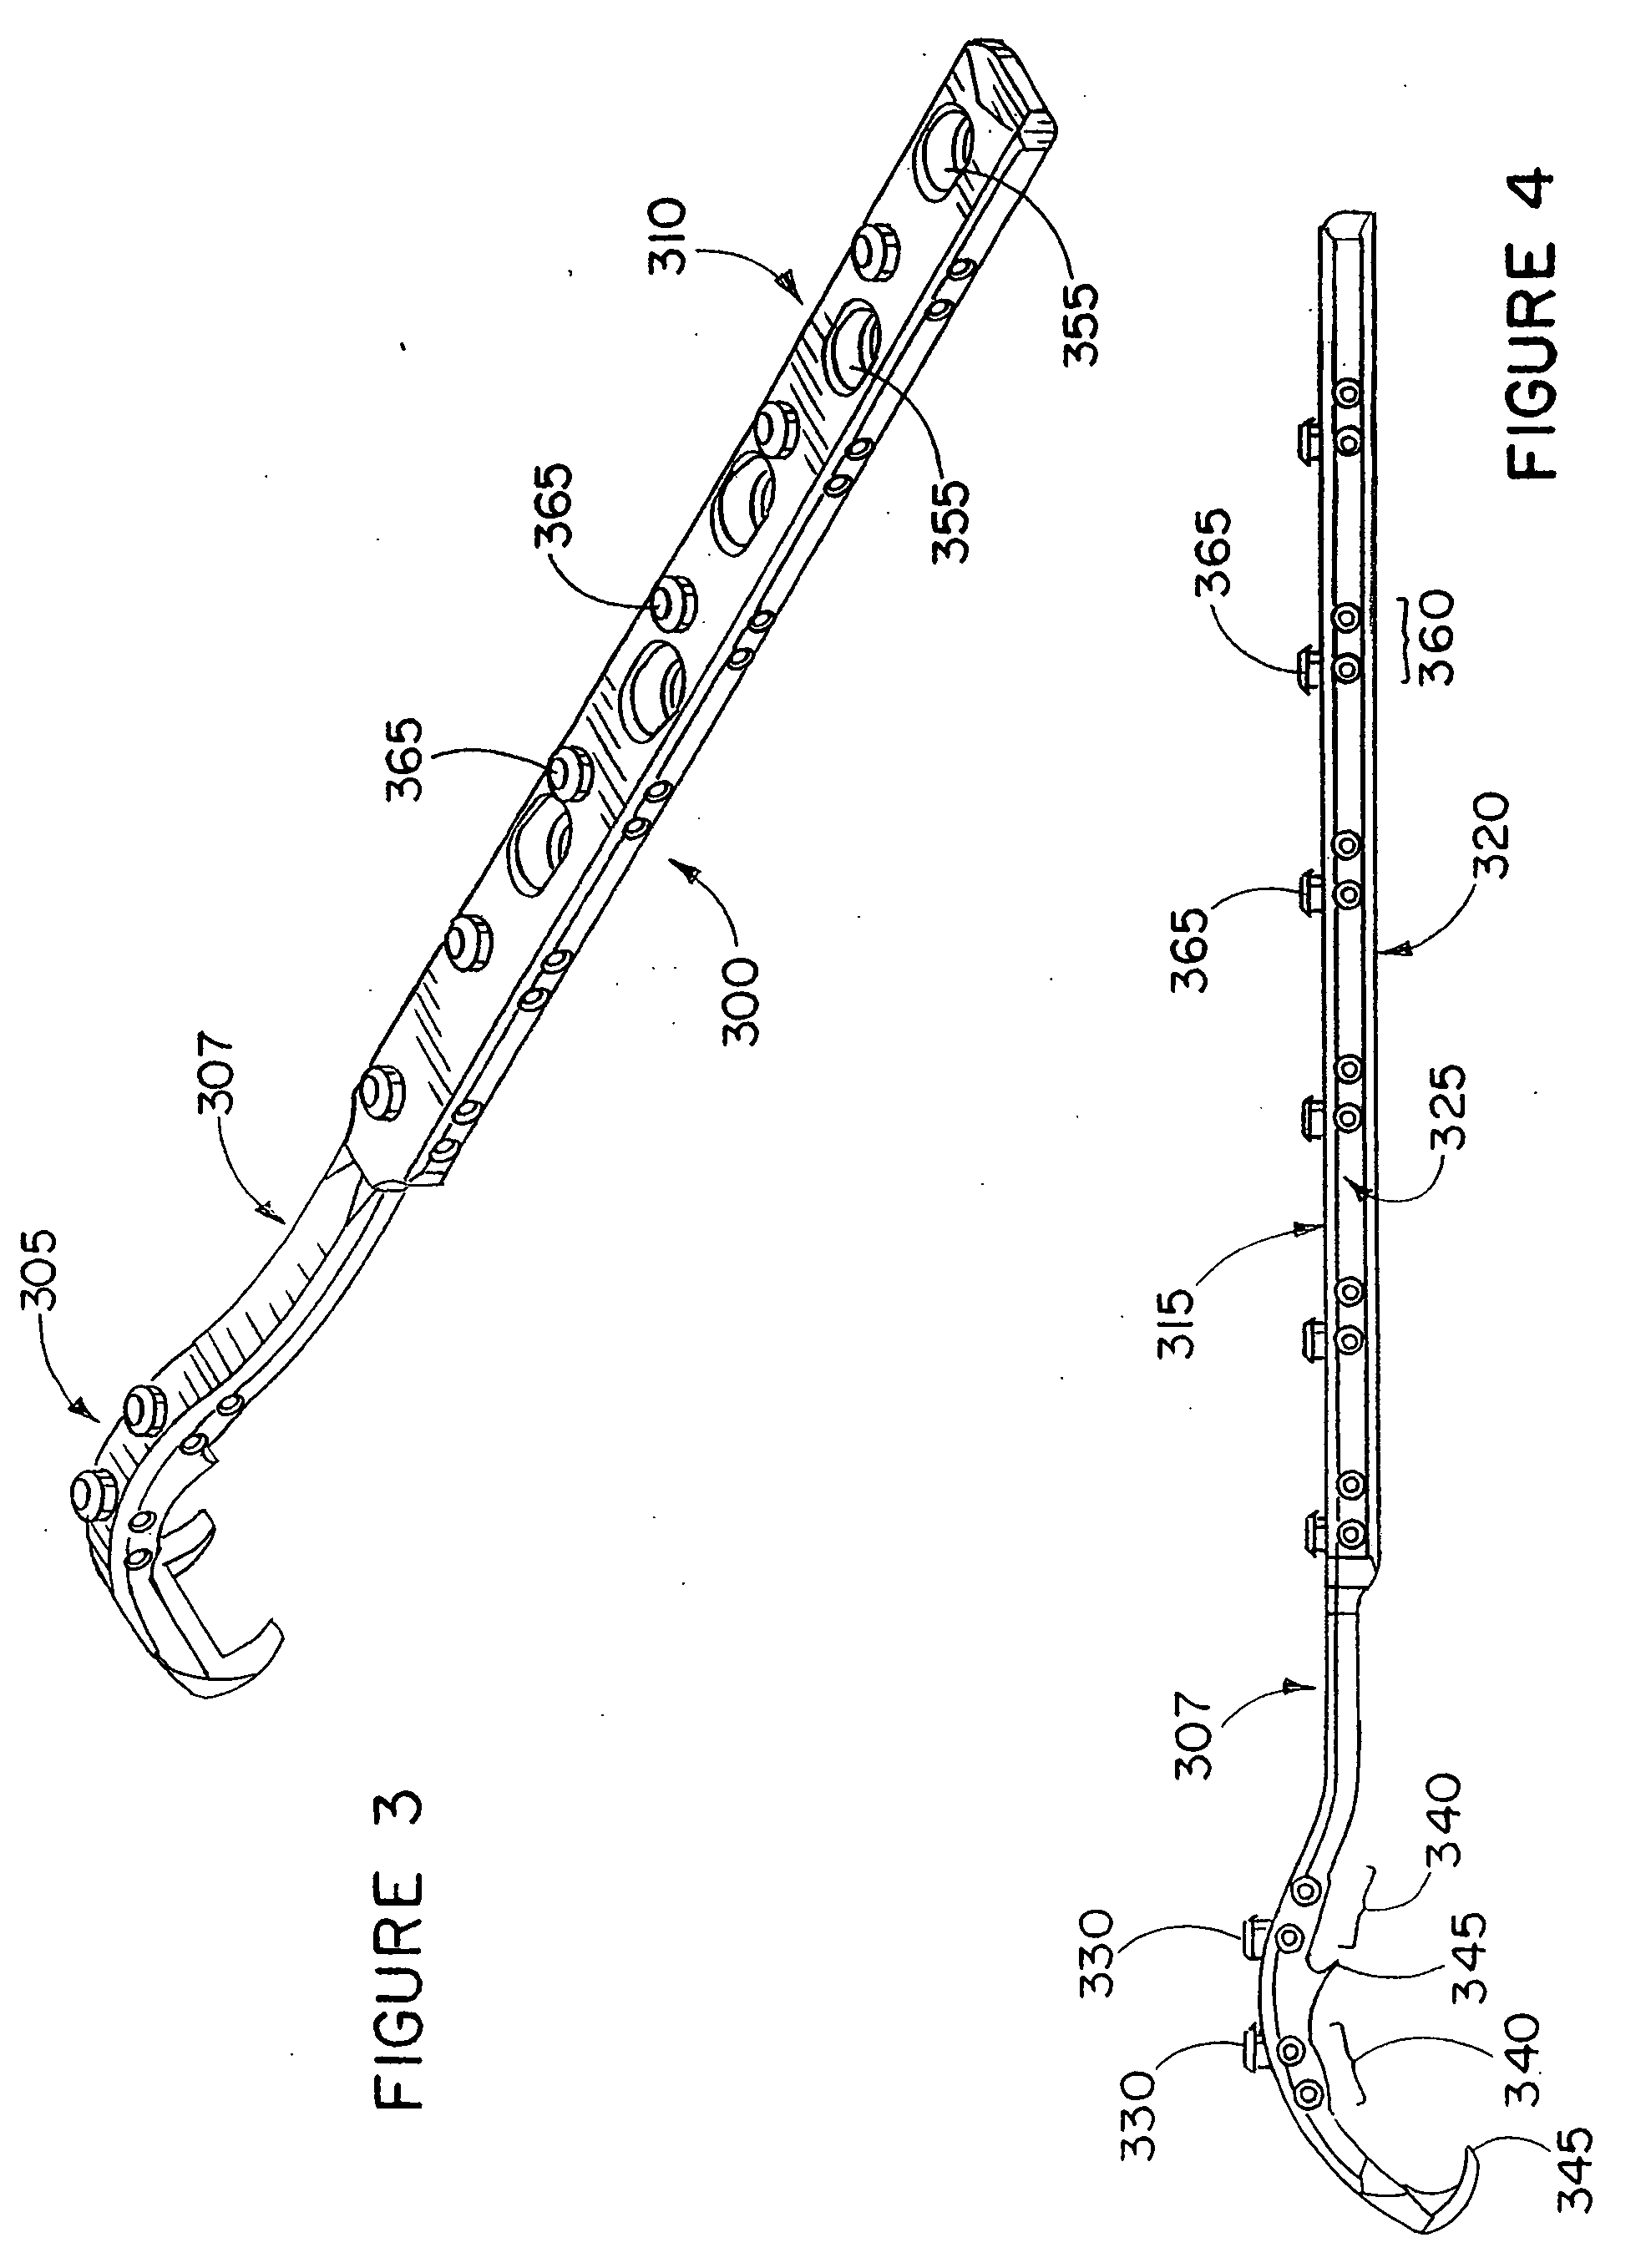 Apparatus and method for repairing the femur